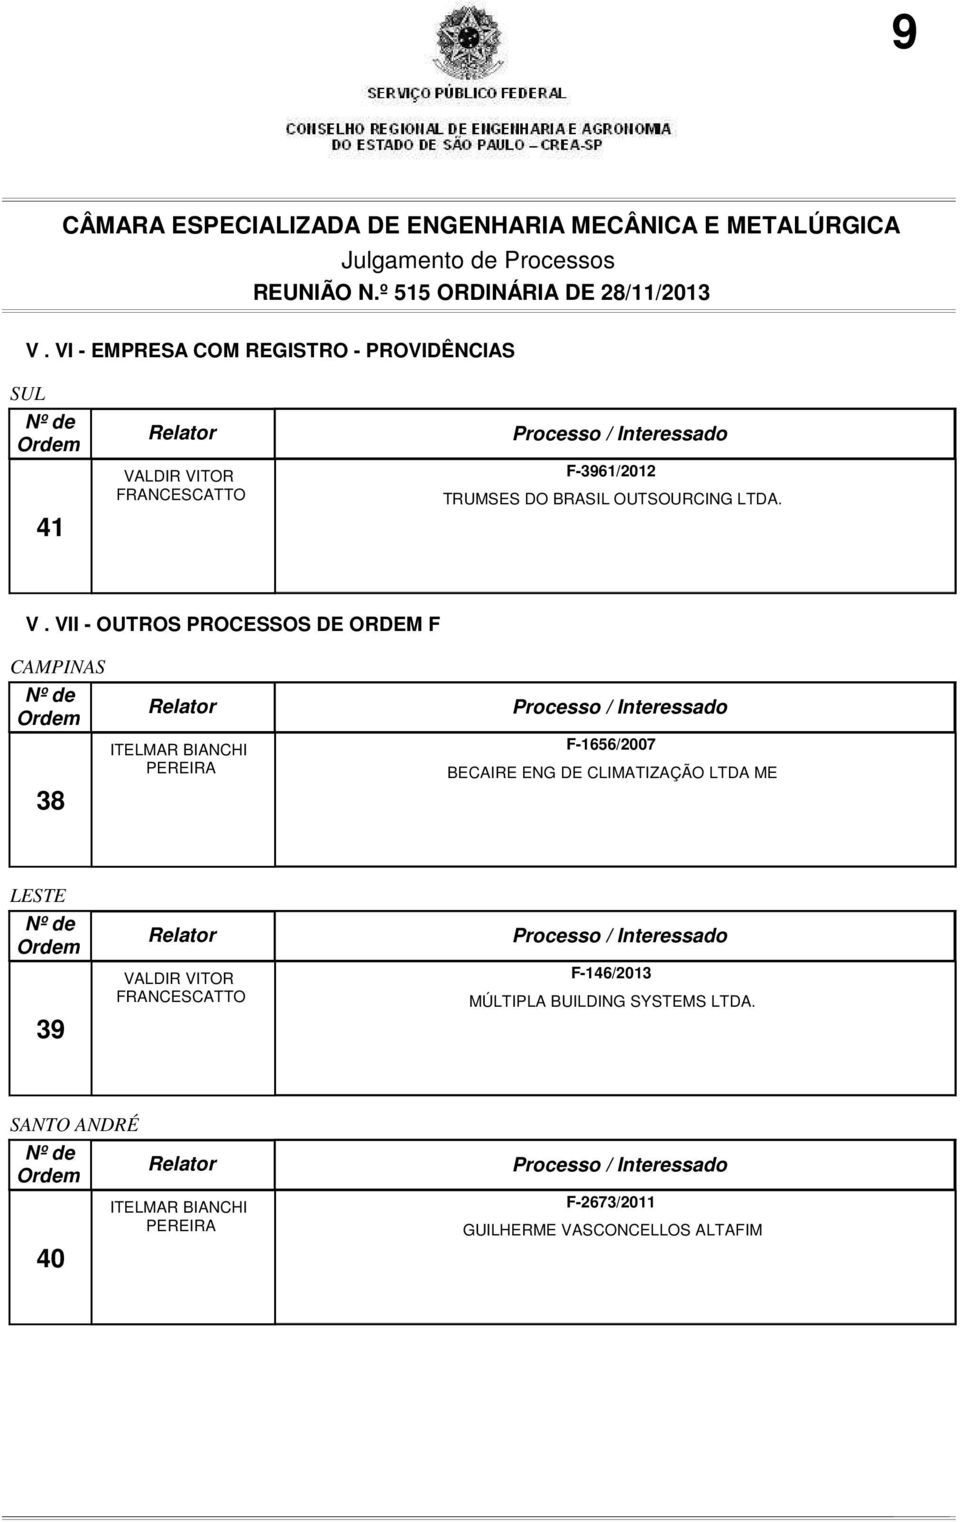 VII - OUTROS PROCESSOS DE ORDEM F CAMPINAS 38 ITELMAR BIANCHI PEREIRA F-1656/2007 BECAIRE ENG DE